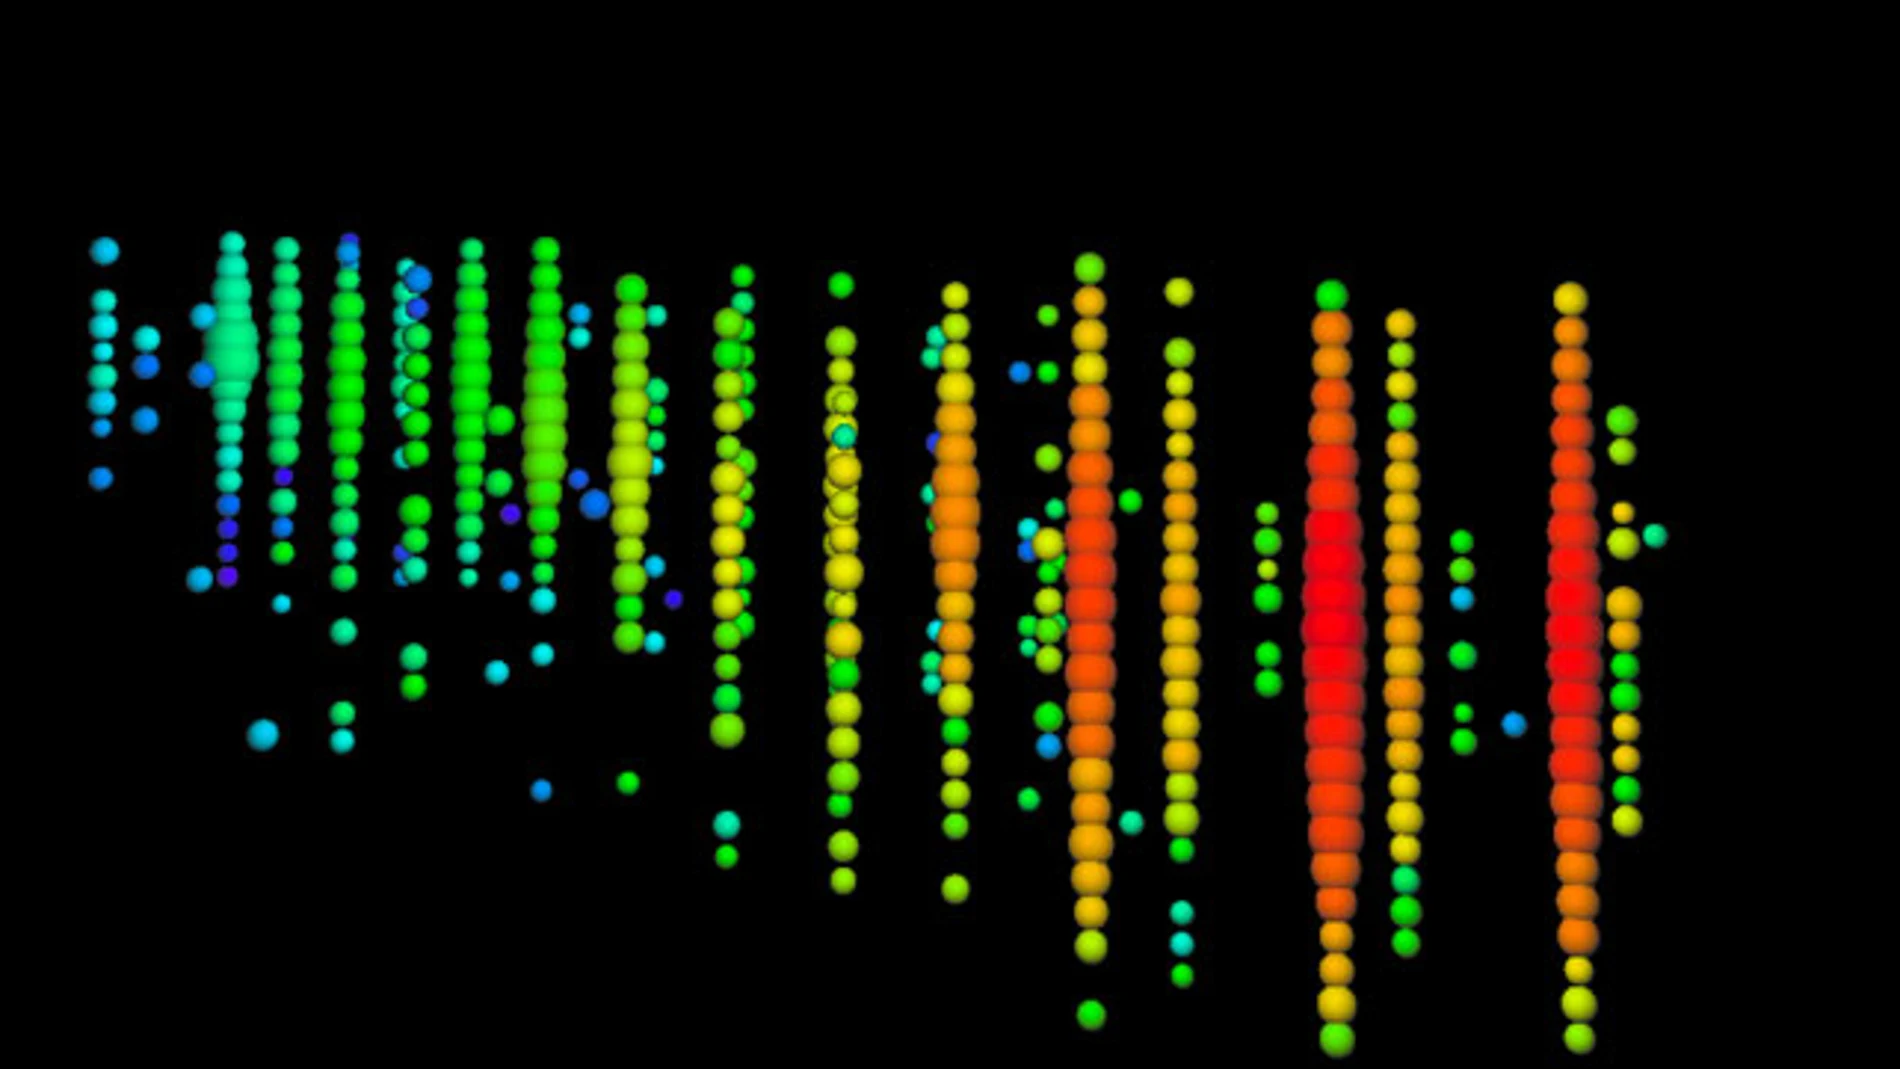 Esta exhibición de eventos, del neutrino de alta energía detectado por IceCube el 22 de septiembre de 2017, muestra un muón, creado por la interacción de un neutrino con el hielo muy cerca de IceCube, que deja una pista de luz al cruzar el detector. En esta pantalla, la luz recogida por cada sensor se muestra con una esfera de color. El degradado de color, de rojo a verde / azul, muestra la secuencia de tiempo. Crédito: colaboración IceCube